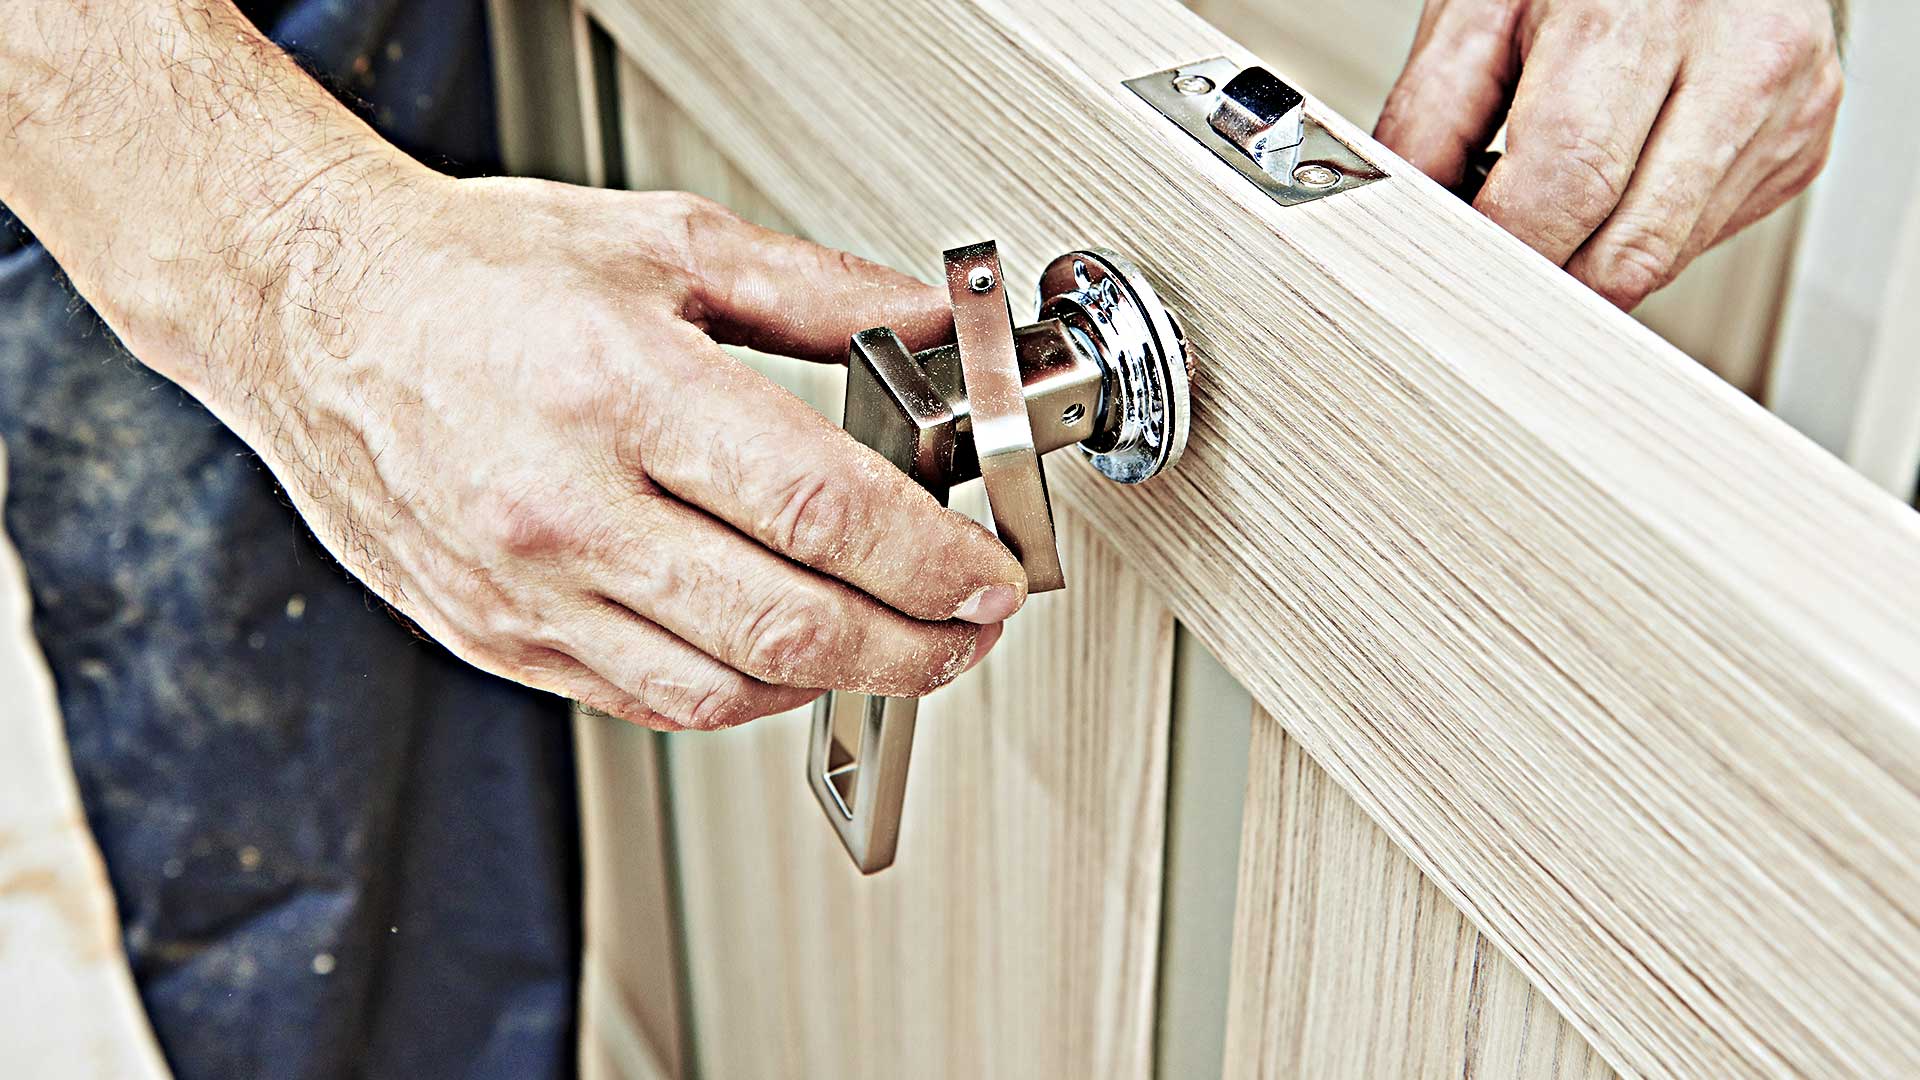 Fixing lock and handle on door